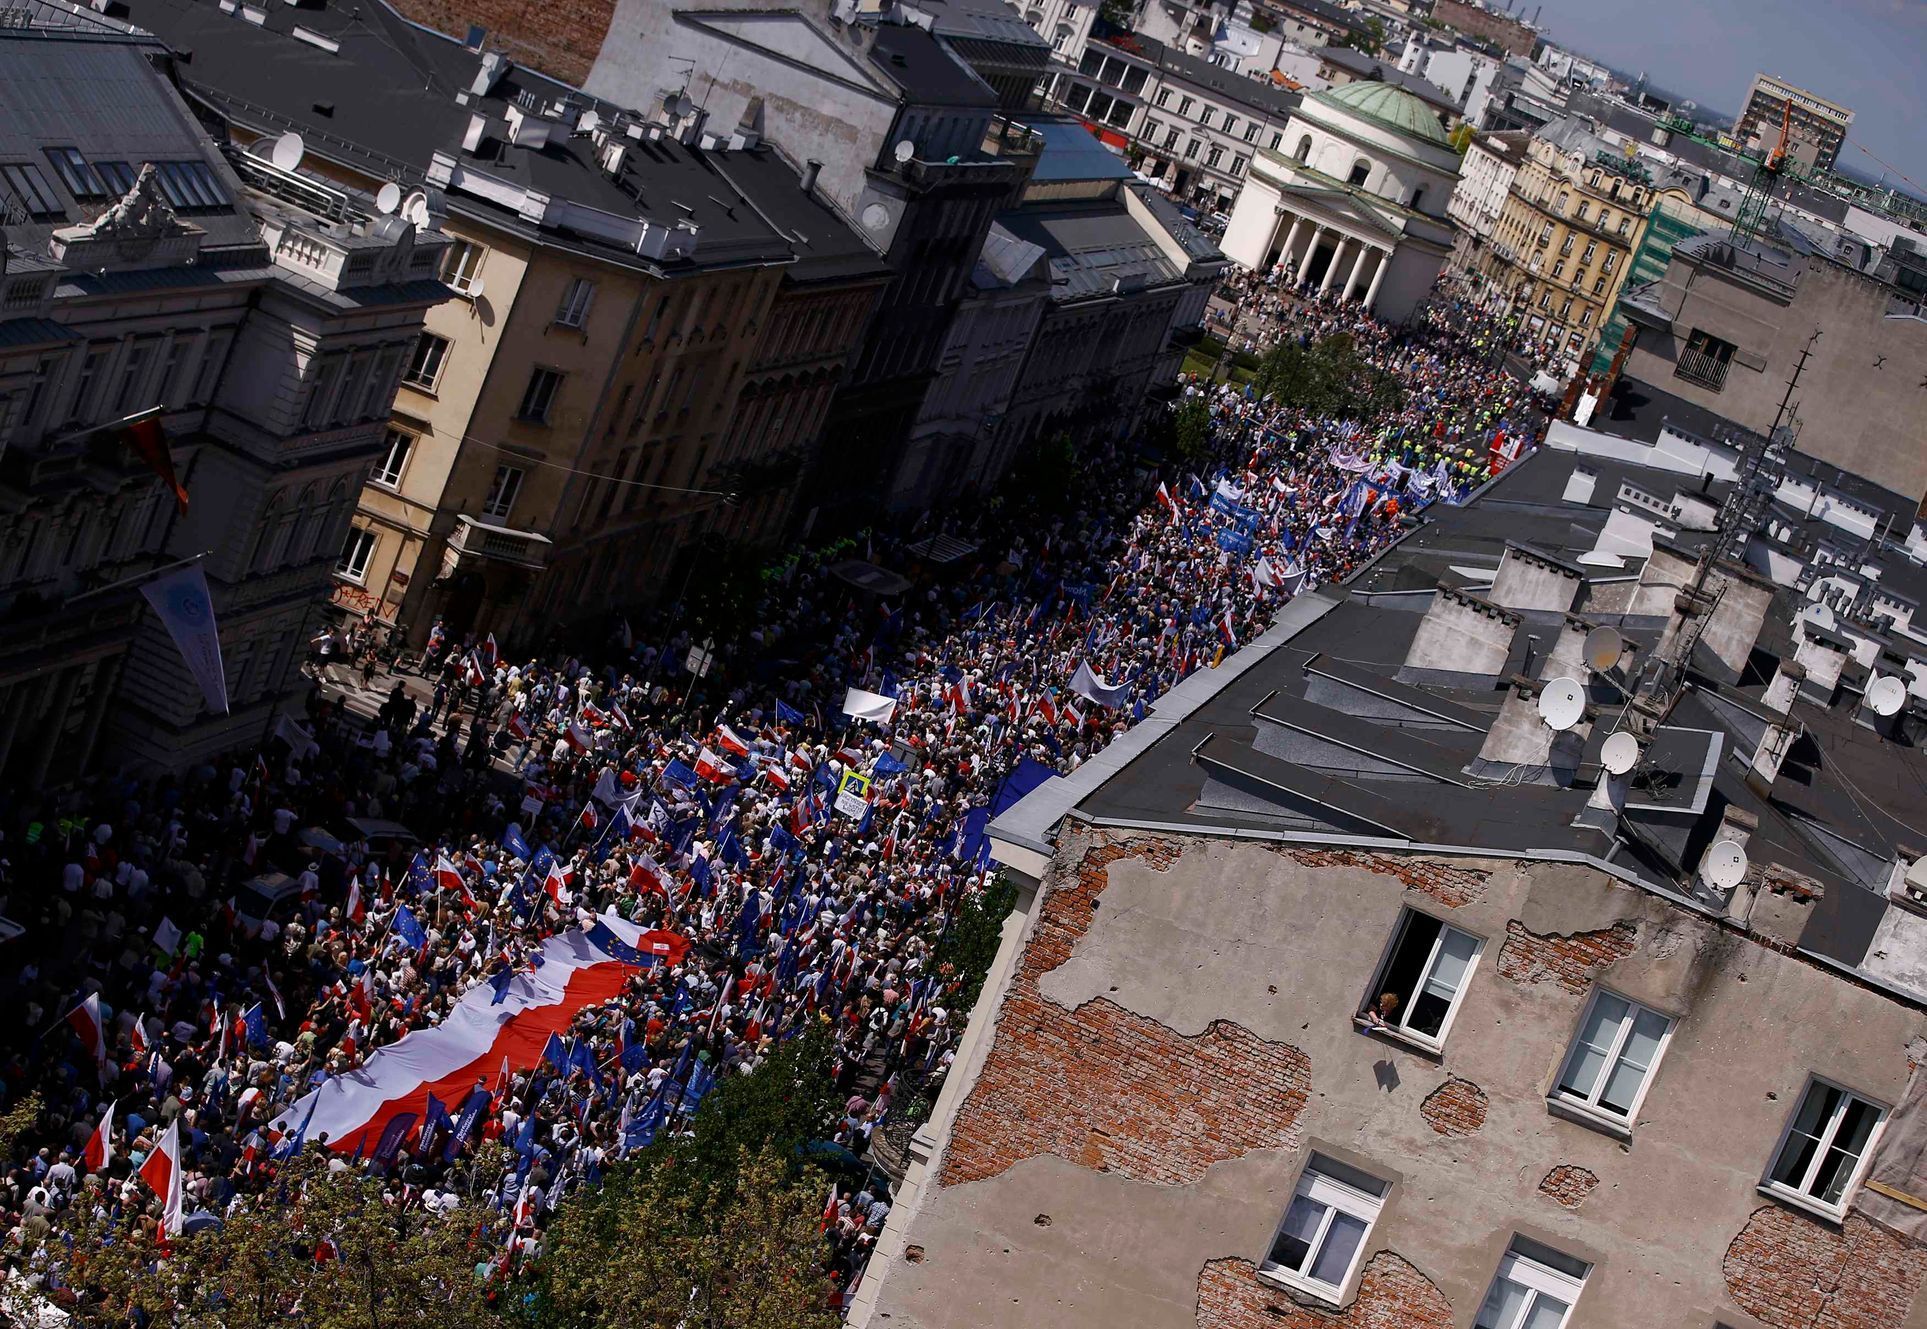 Protivládní demonstrace ve Varšavě